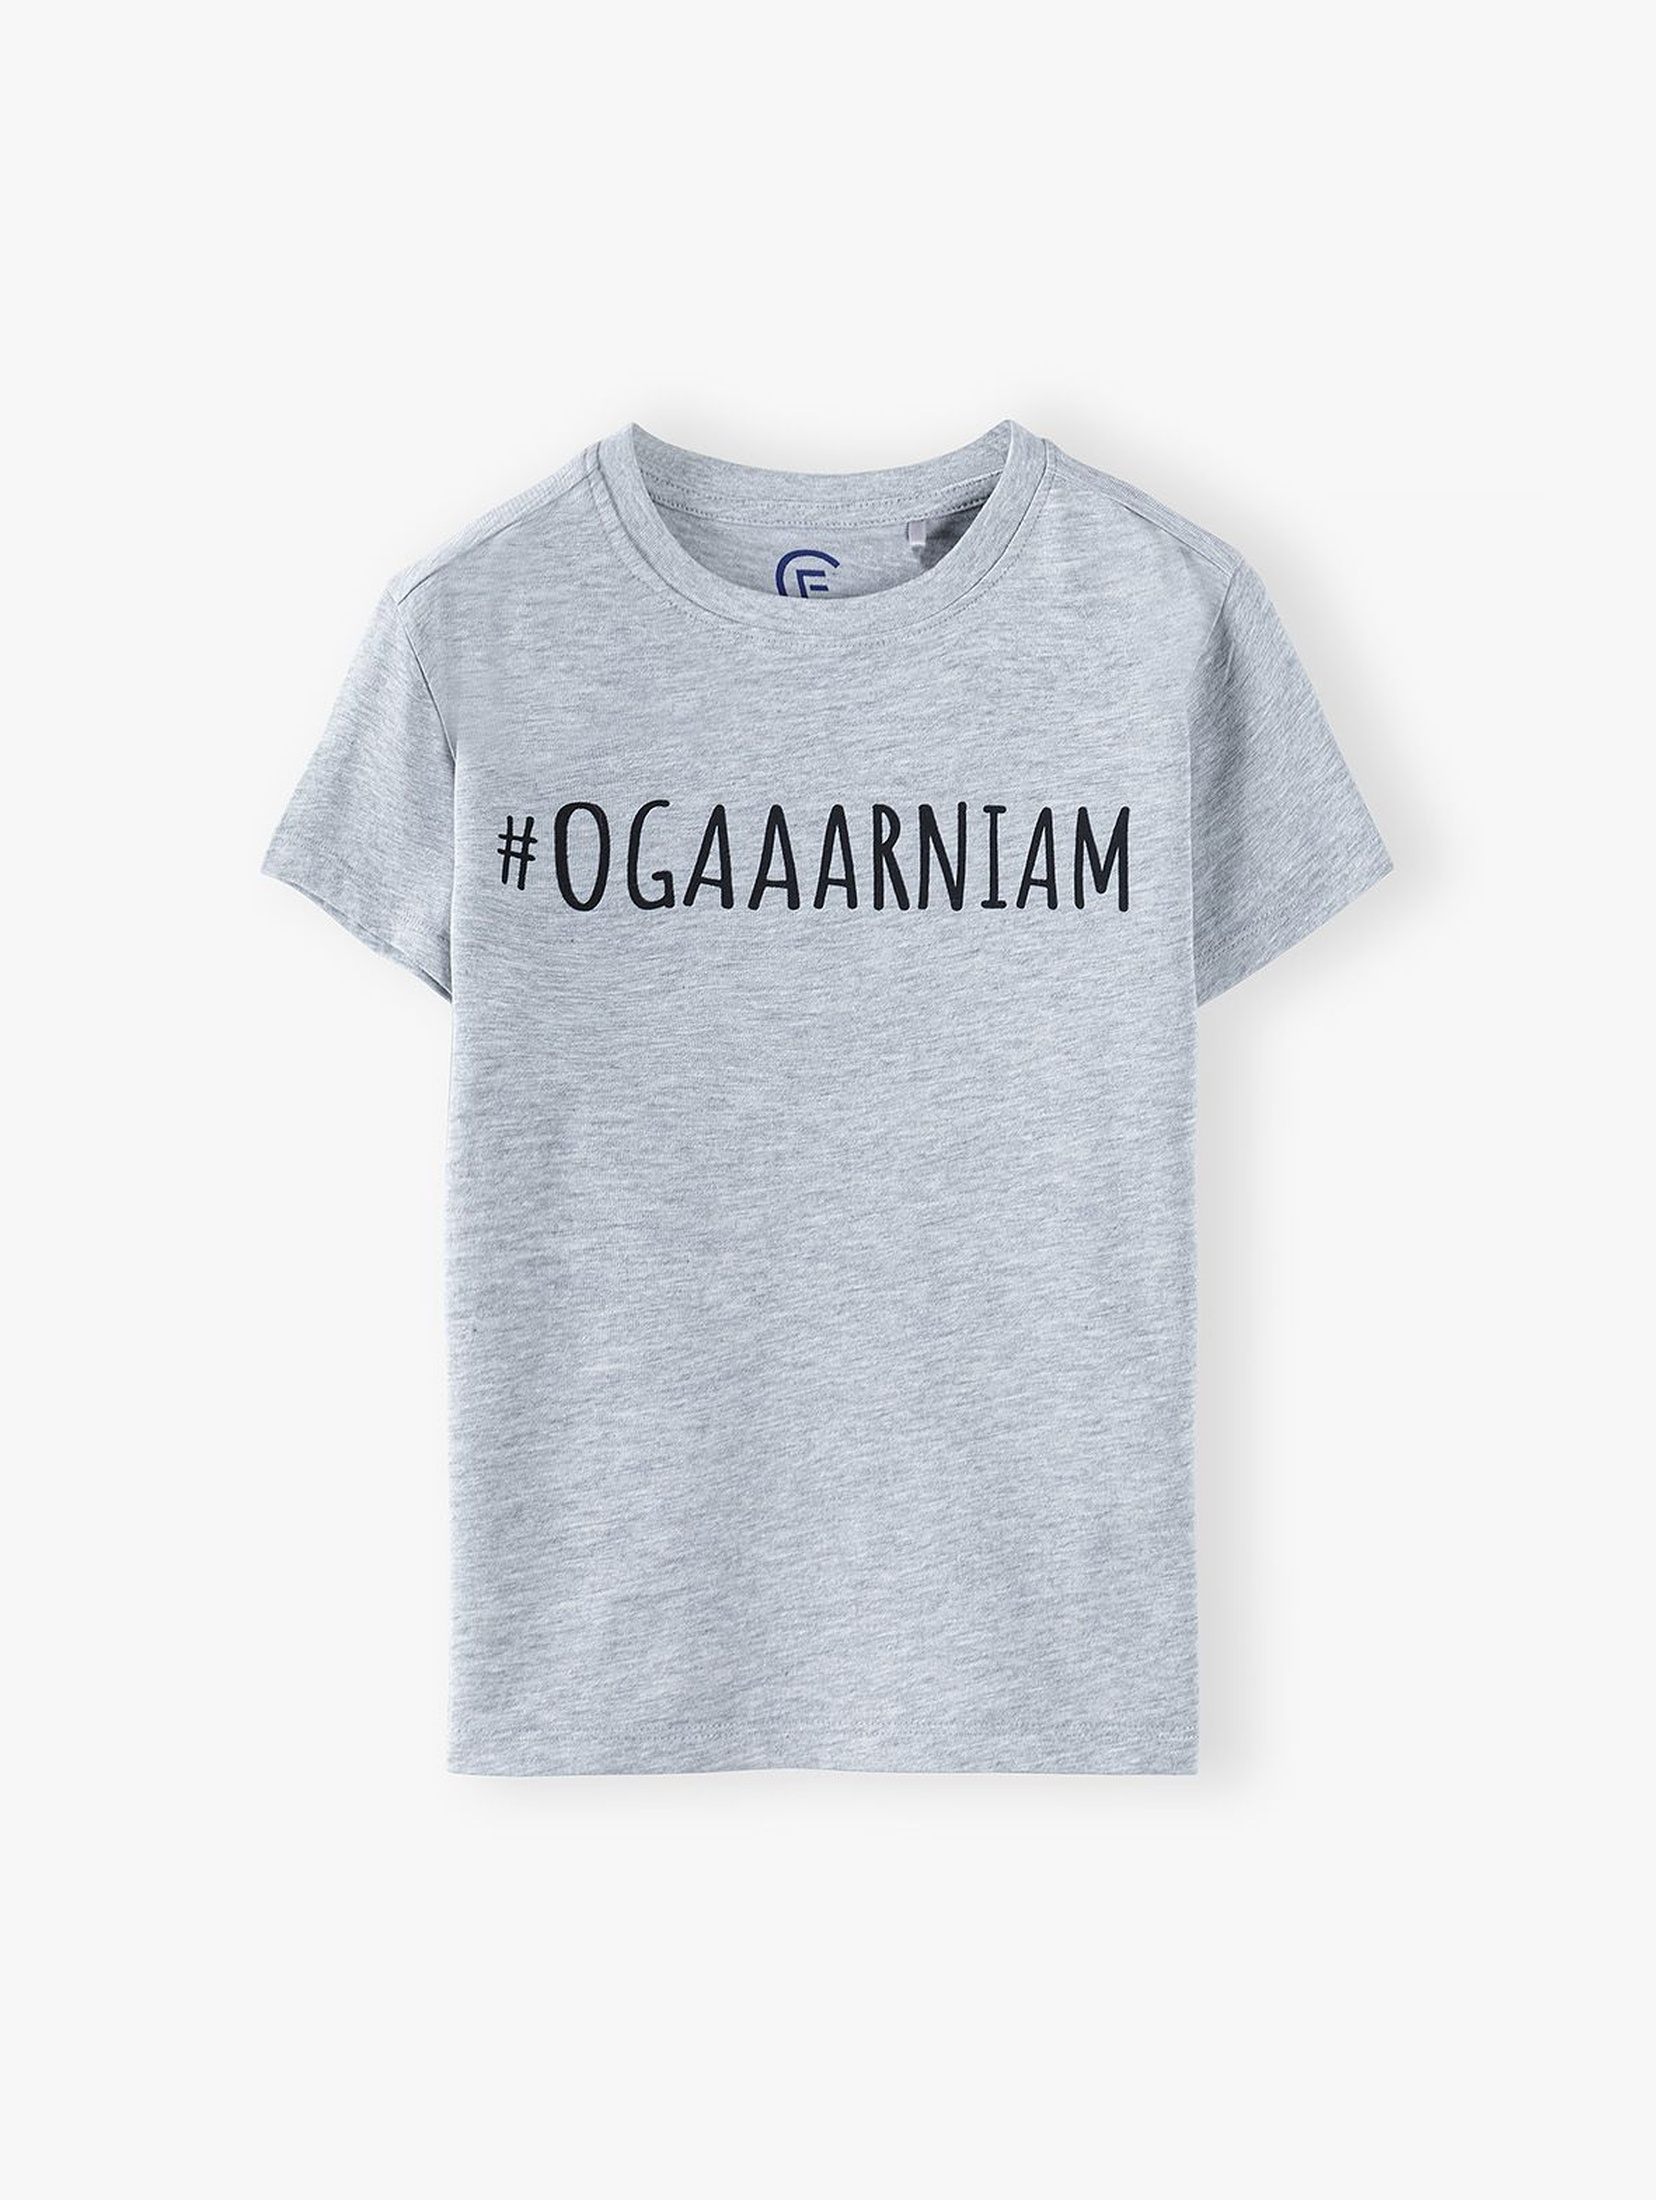 T-shirt chłopięcy z napisem- Ogaaarniam